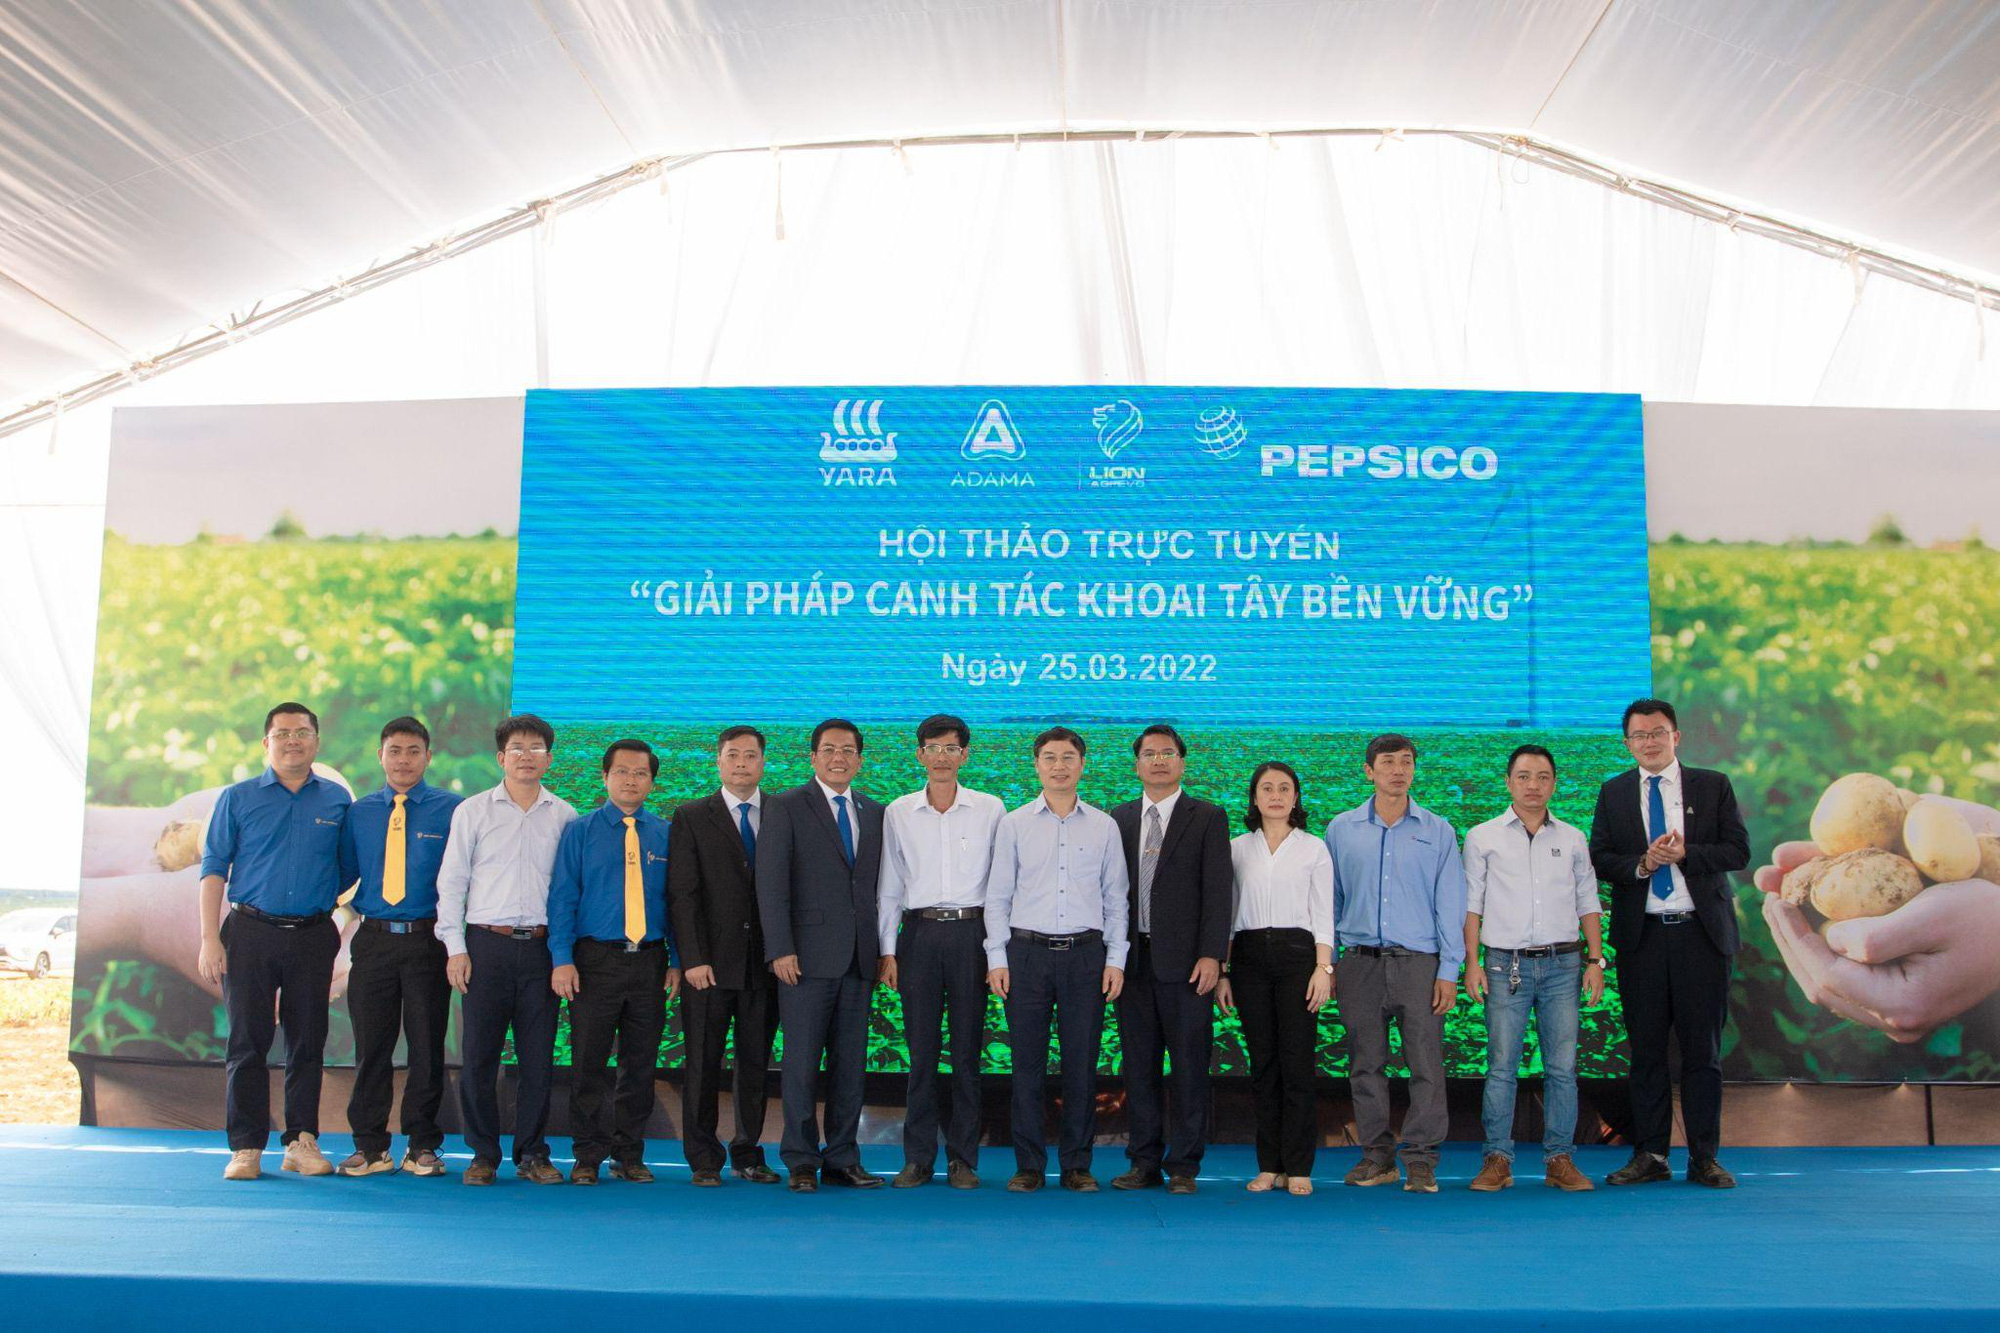 PepsiCo Việt Nam đồng hành cùng nông dân Tây Nguyên phát triển giải pháp canh tác khoai tây bền vững - Ảnh 1.